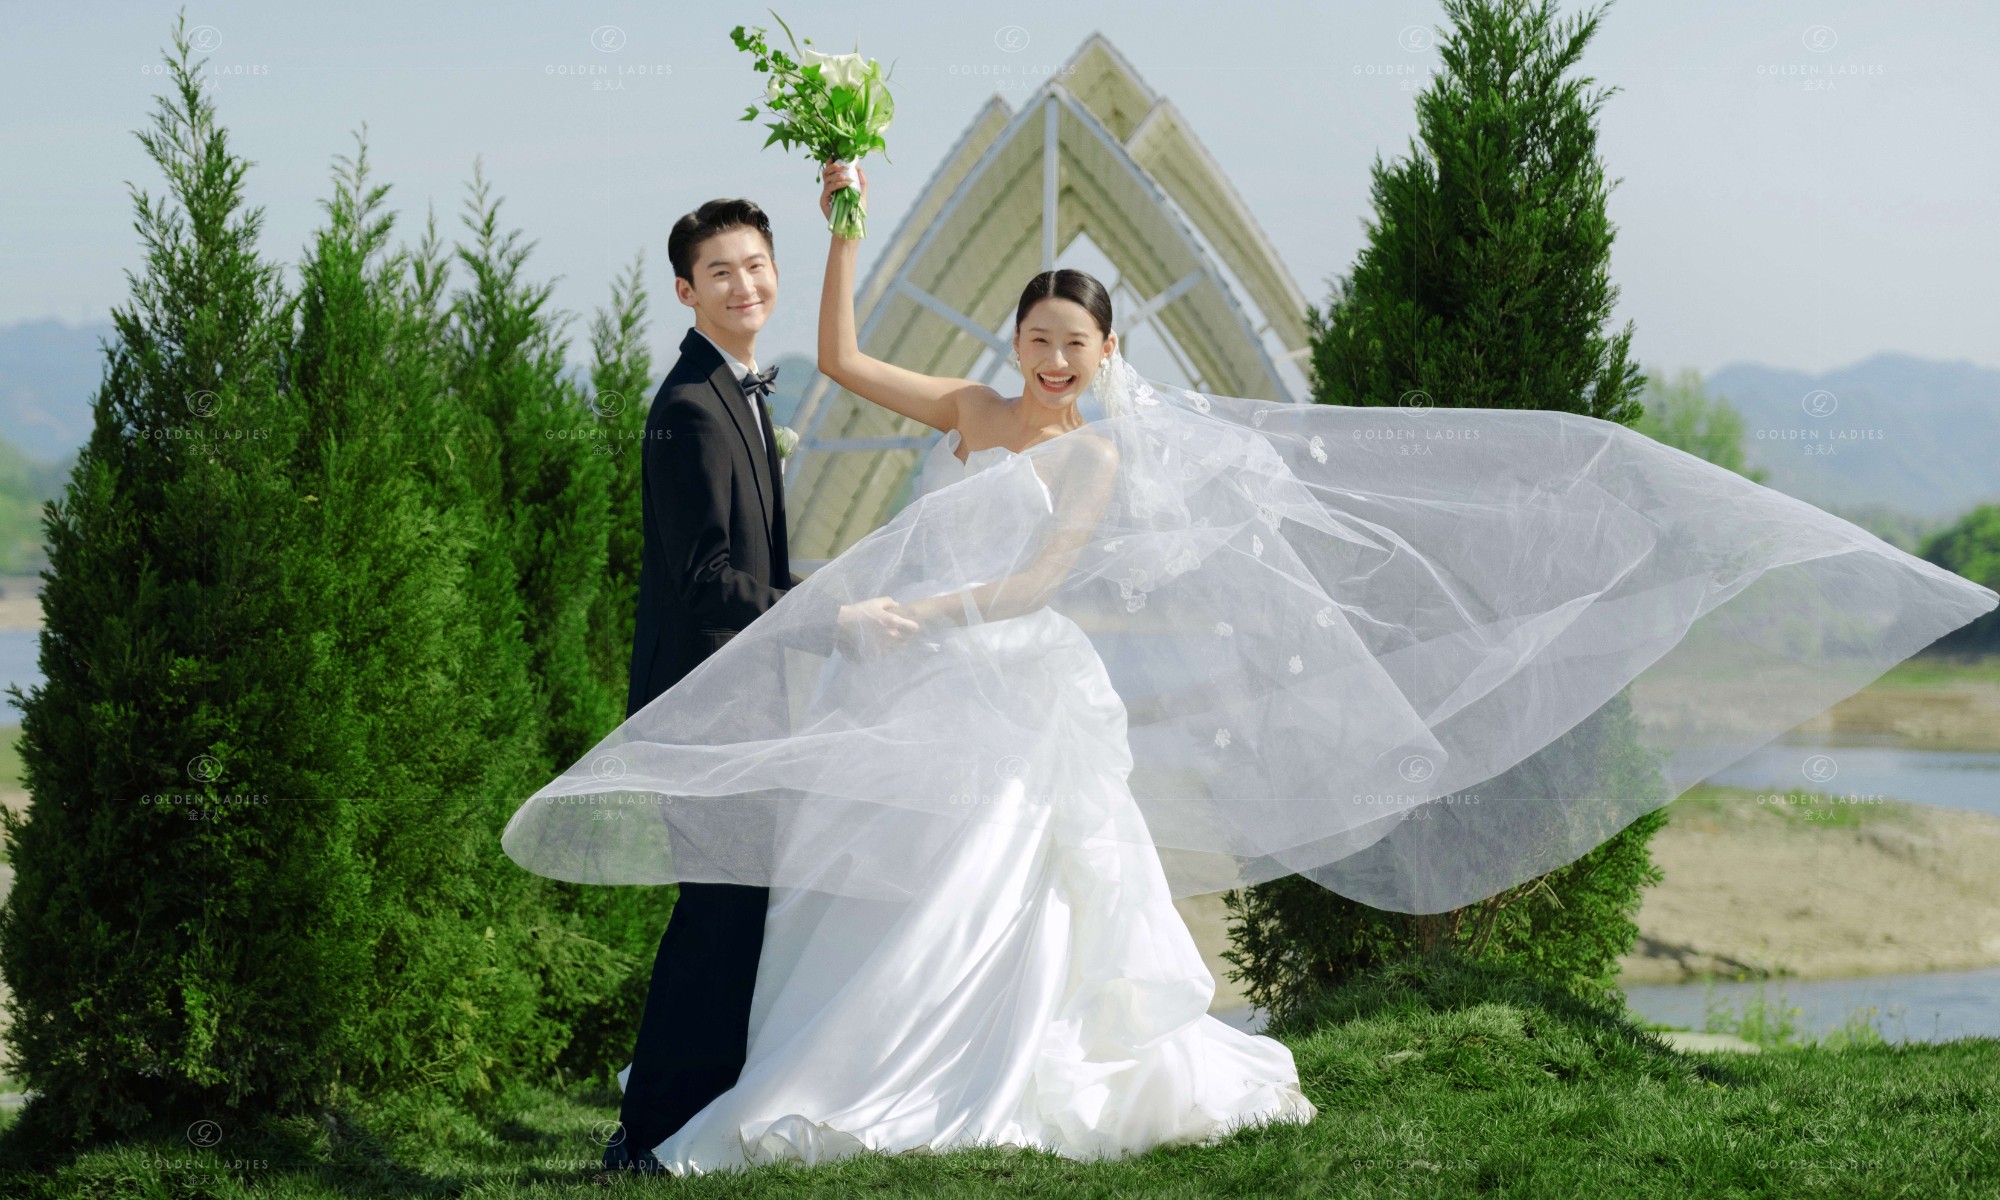 骑士公主 - 目的地婚礼 - 婚礼图片 - 婚礼风尚